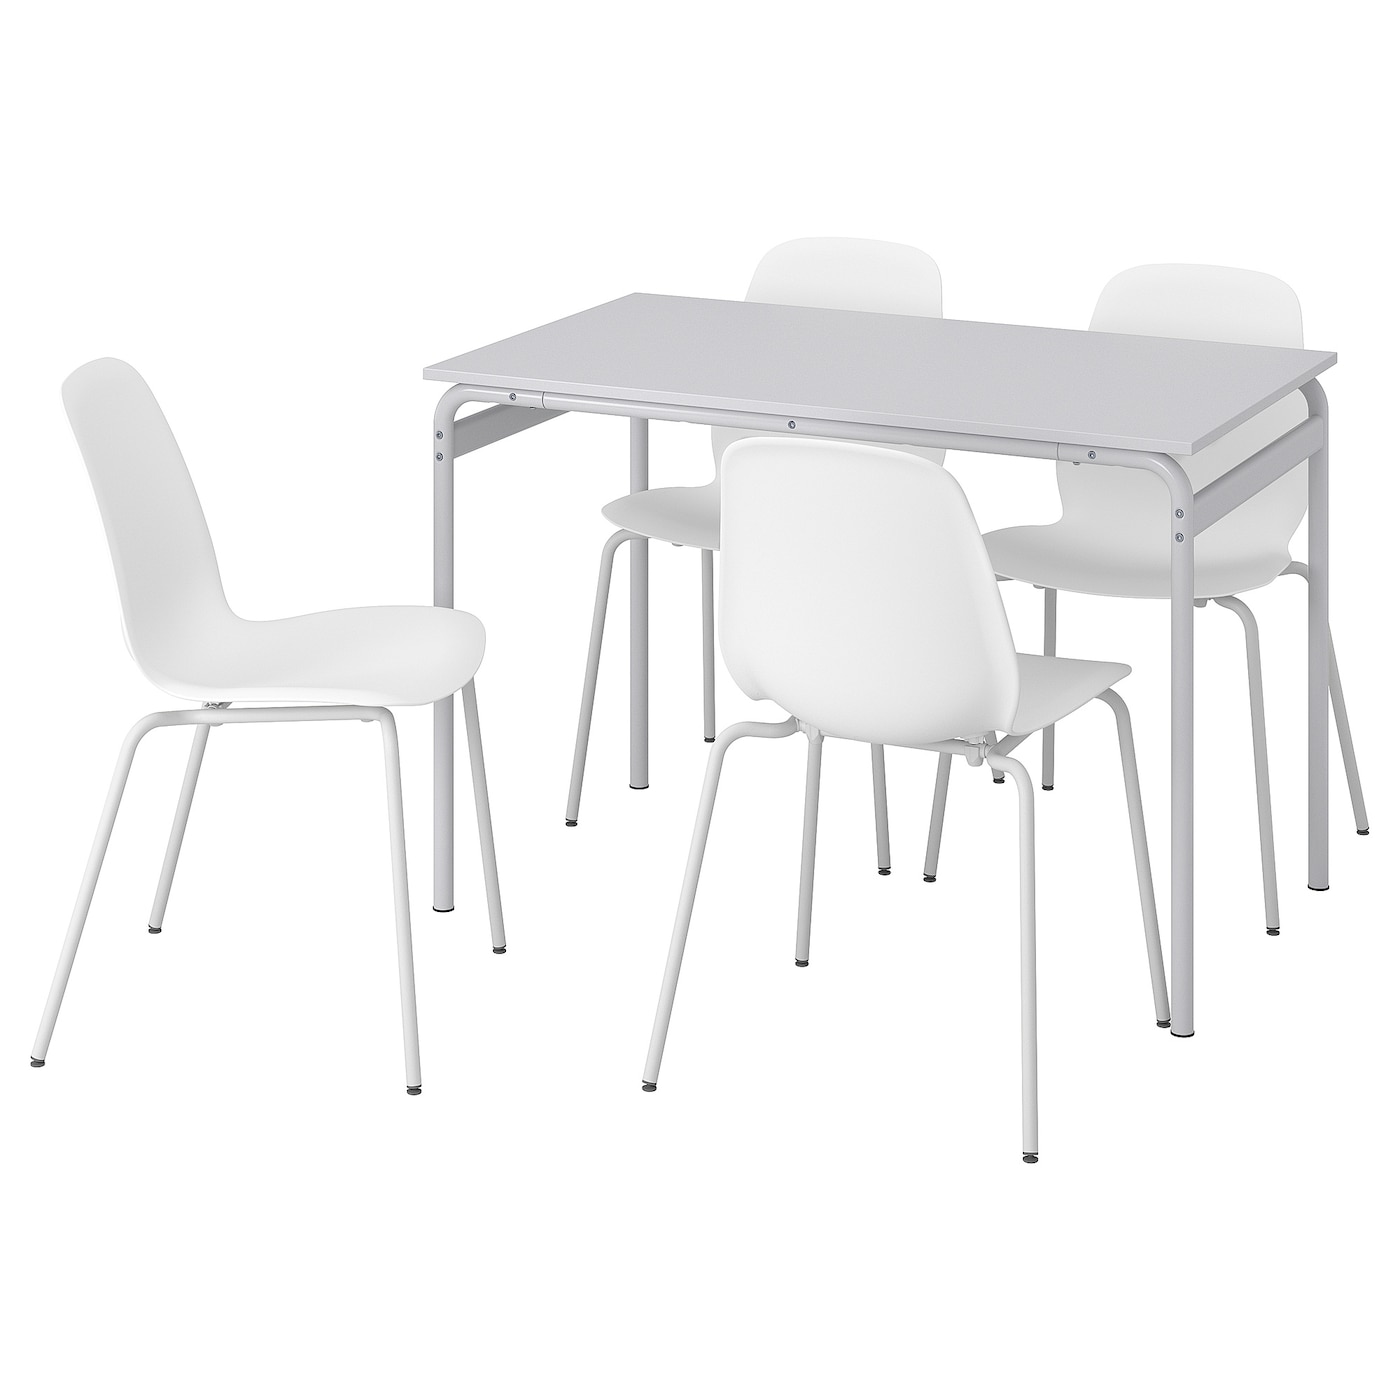 IKEA GRÅSALA / LIDÅS Stół i 4 krzesła, szary/biały biały, 110 cm